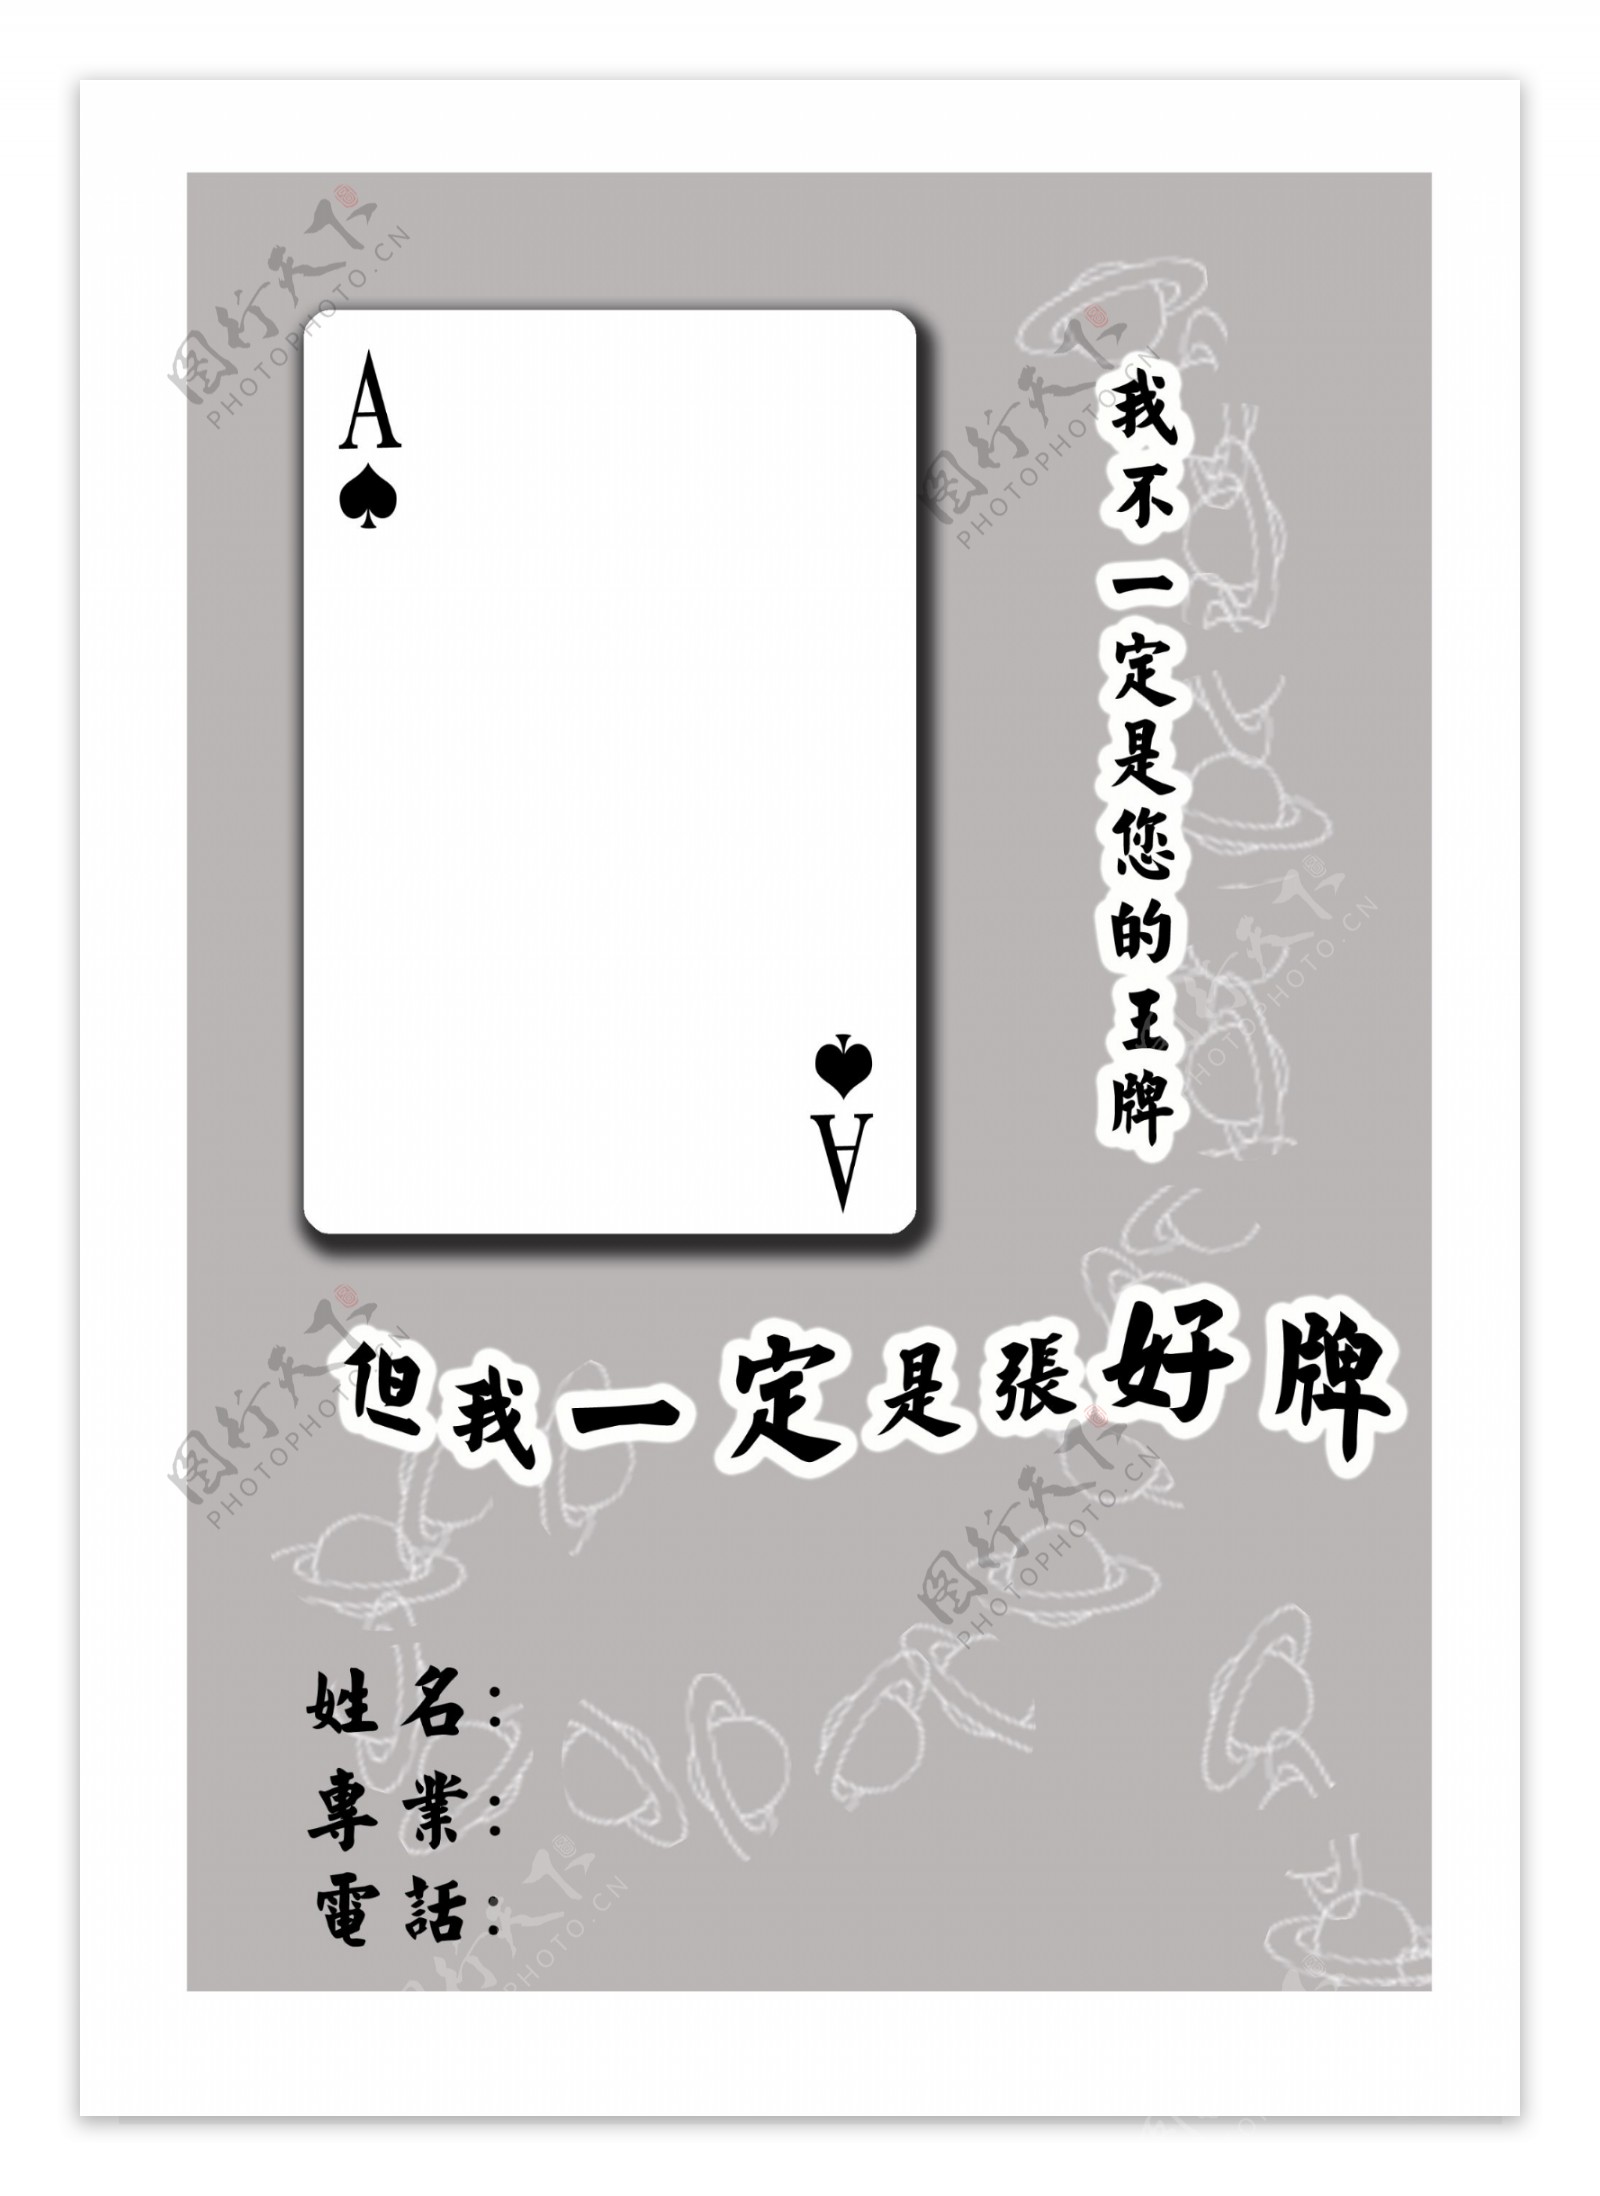 扑克系列简历封面图片